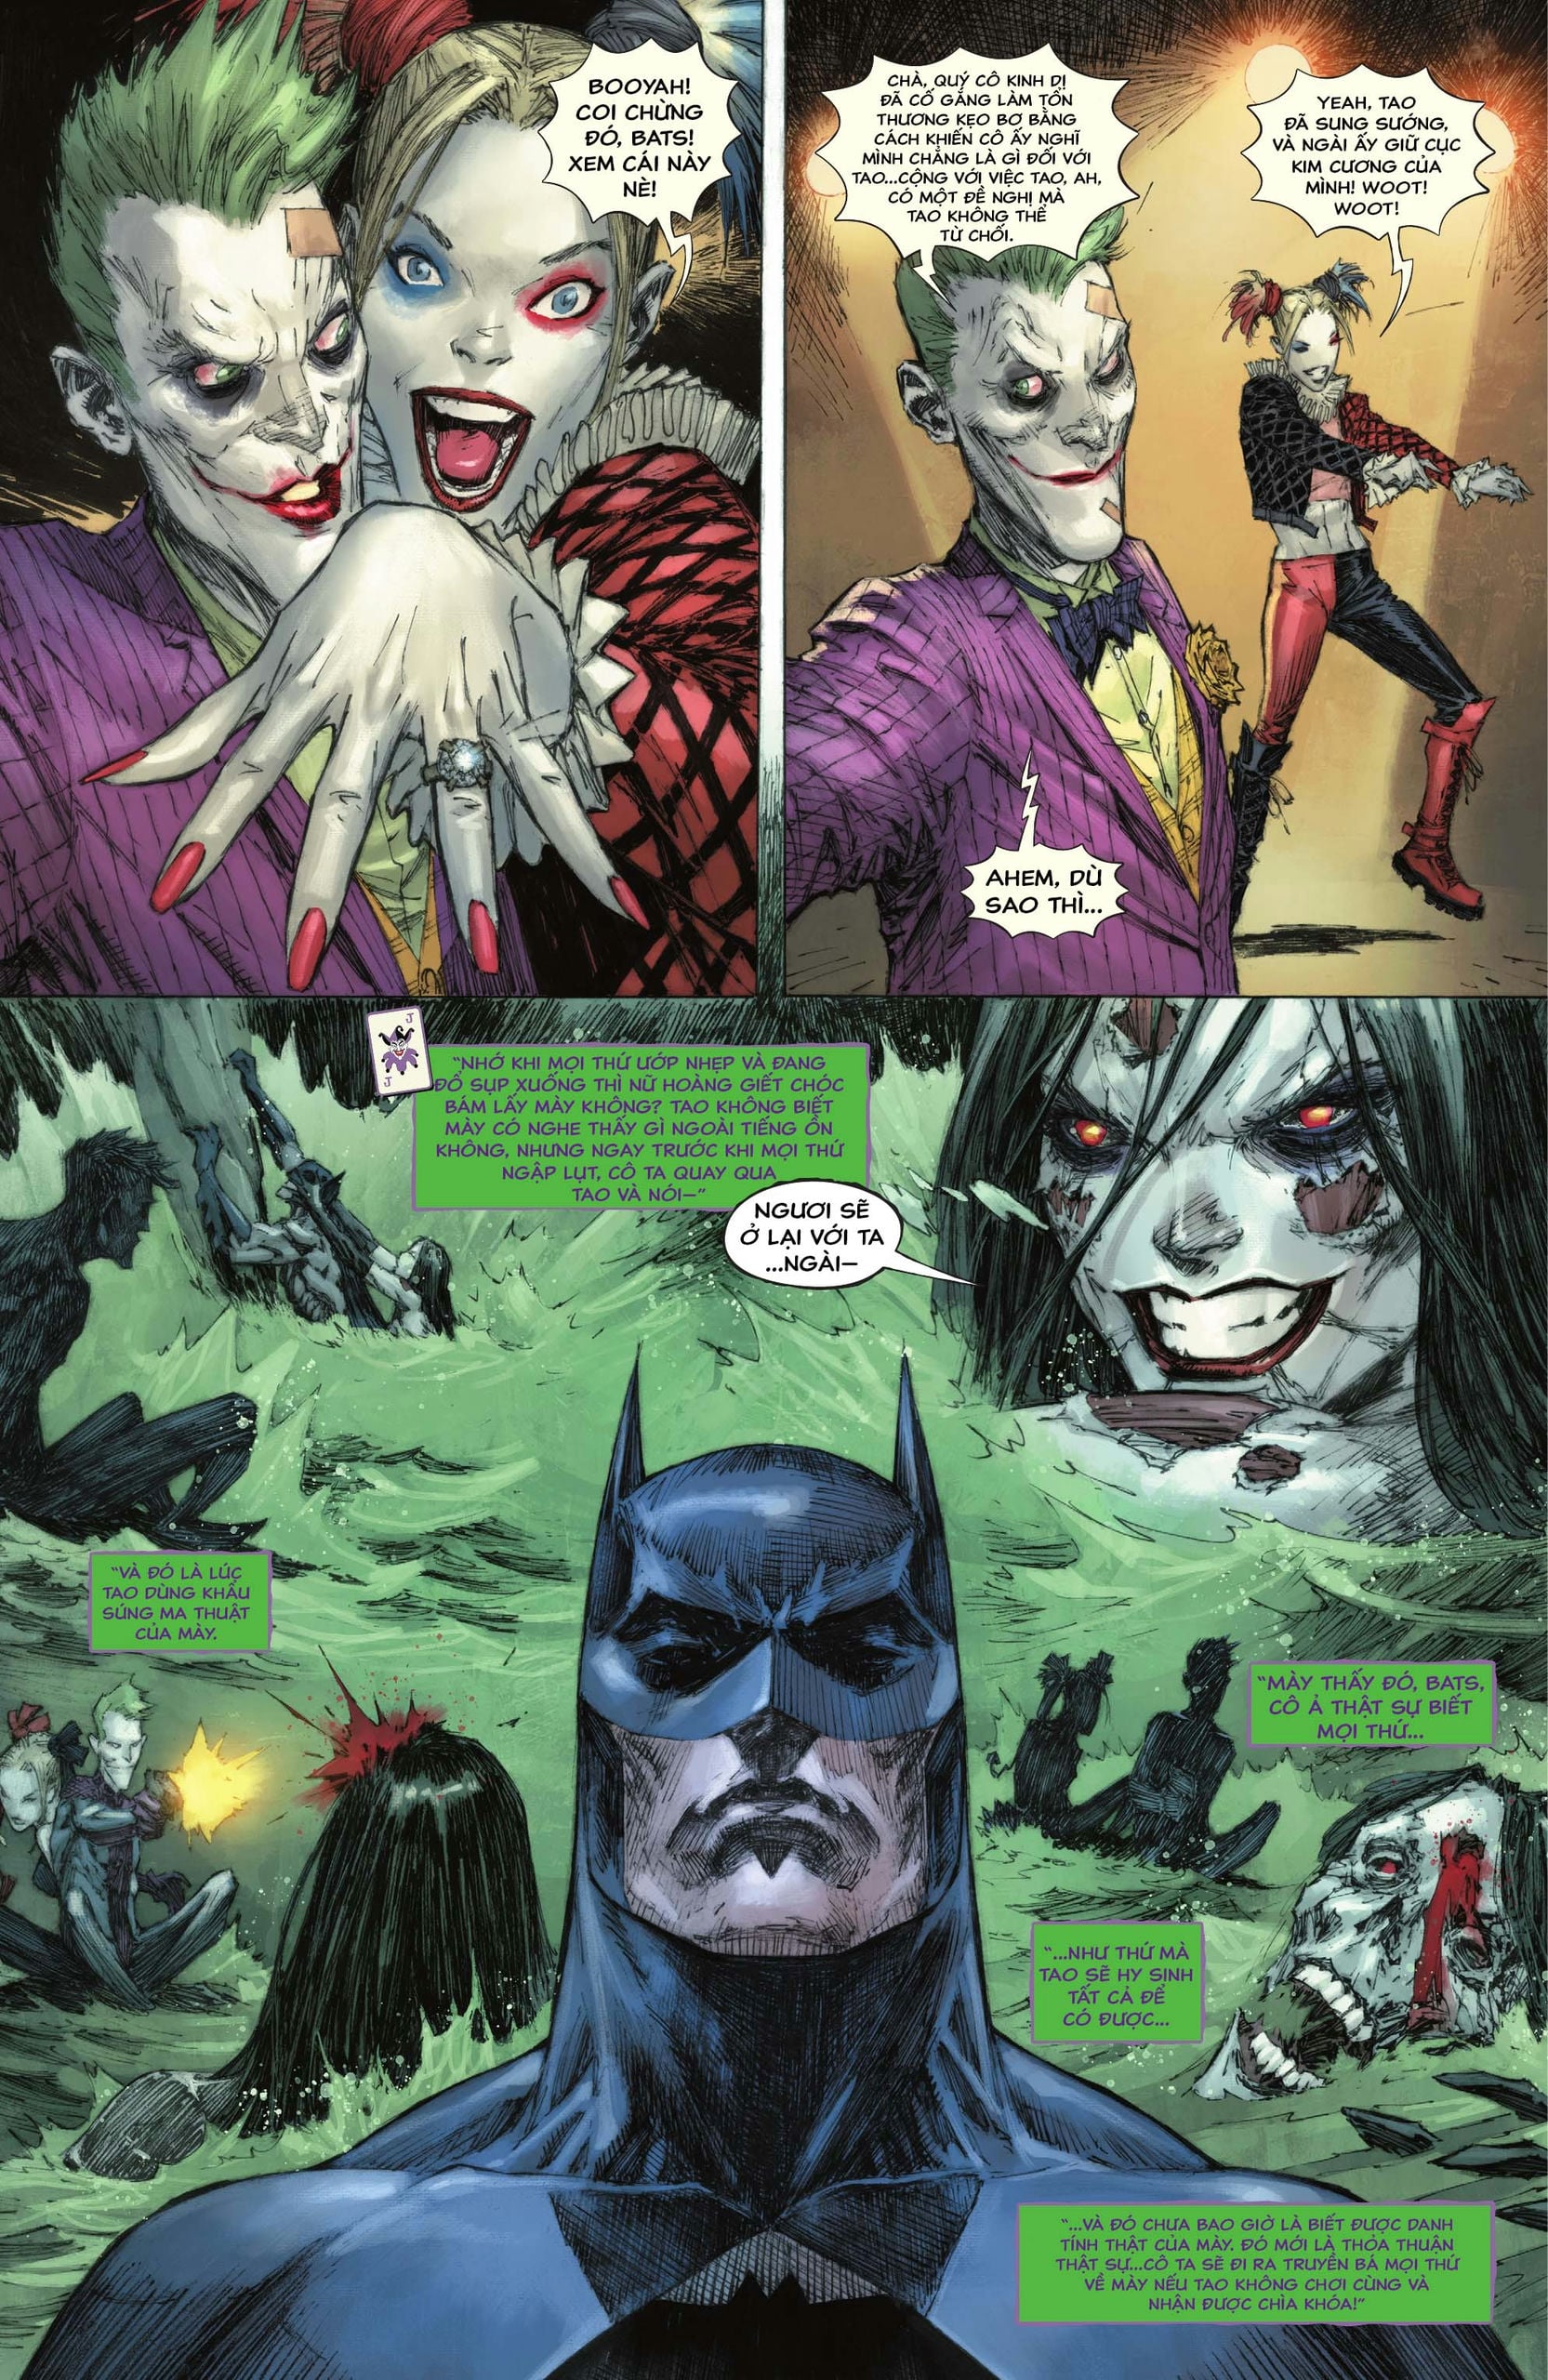 https://langgeek.net/wp-content/webpc-passthru.php?src=https://langgeek.net/wp-content/uploads/2023/05/Batman-_-The-Joker-The-Deadly-Duo-2022-007-024.jpg&nocache=1